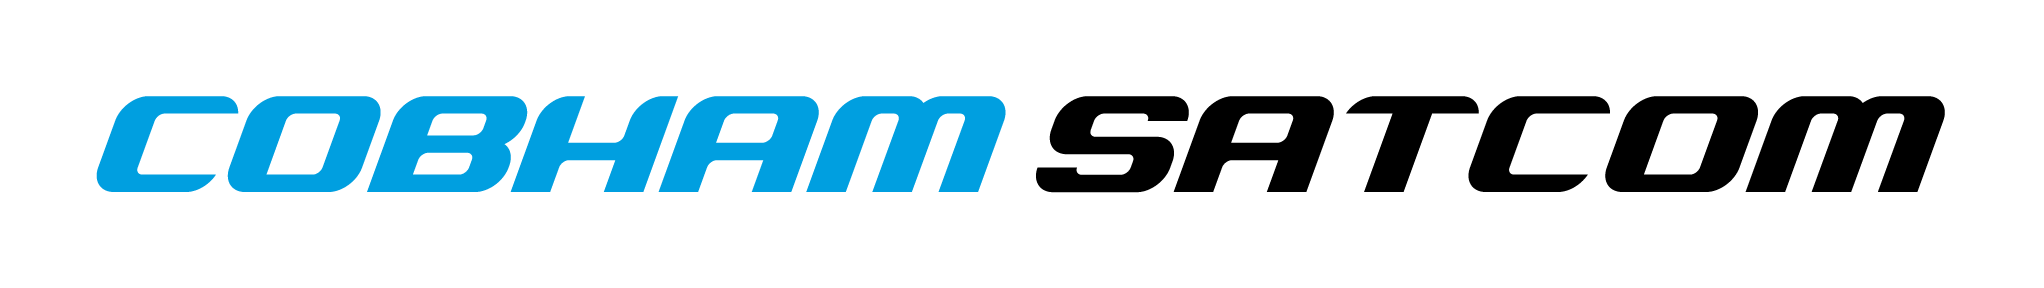 Cobham Satcom logo